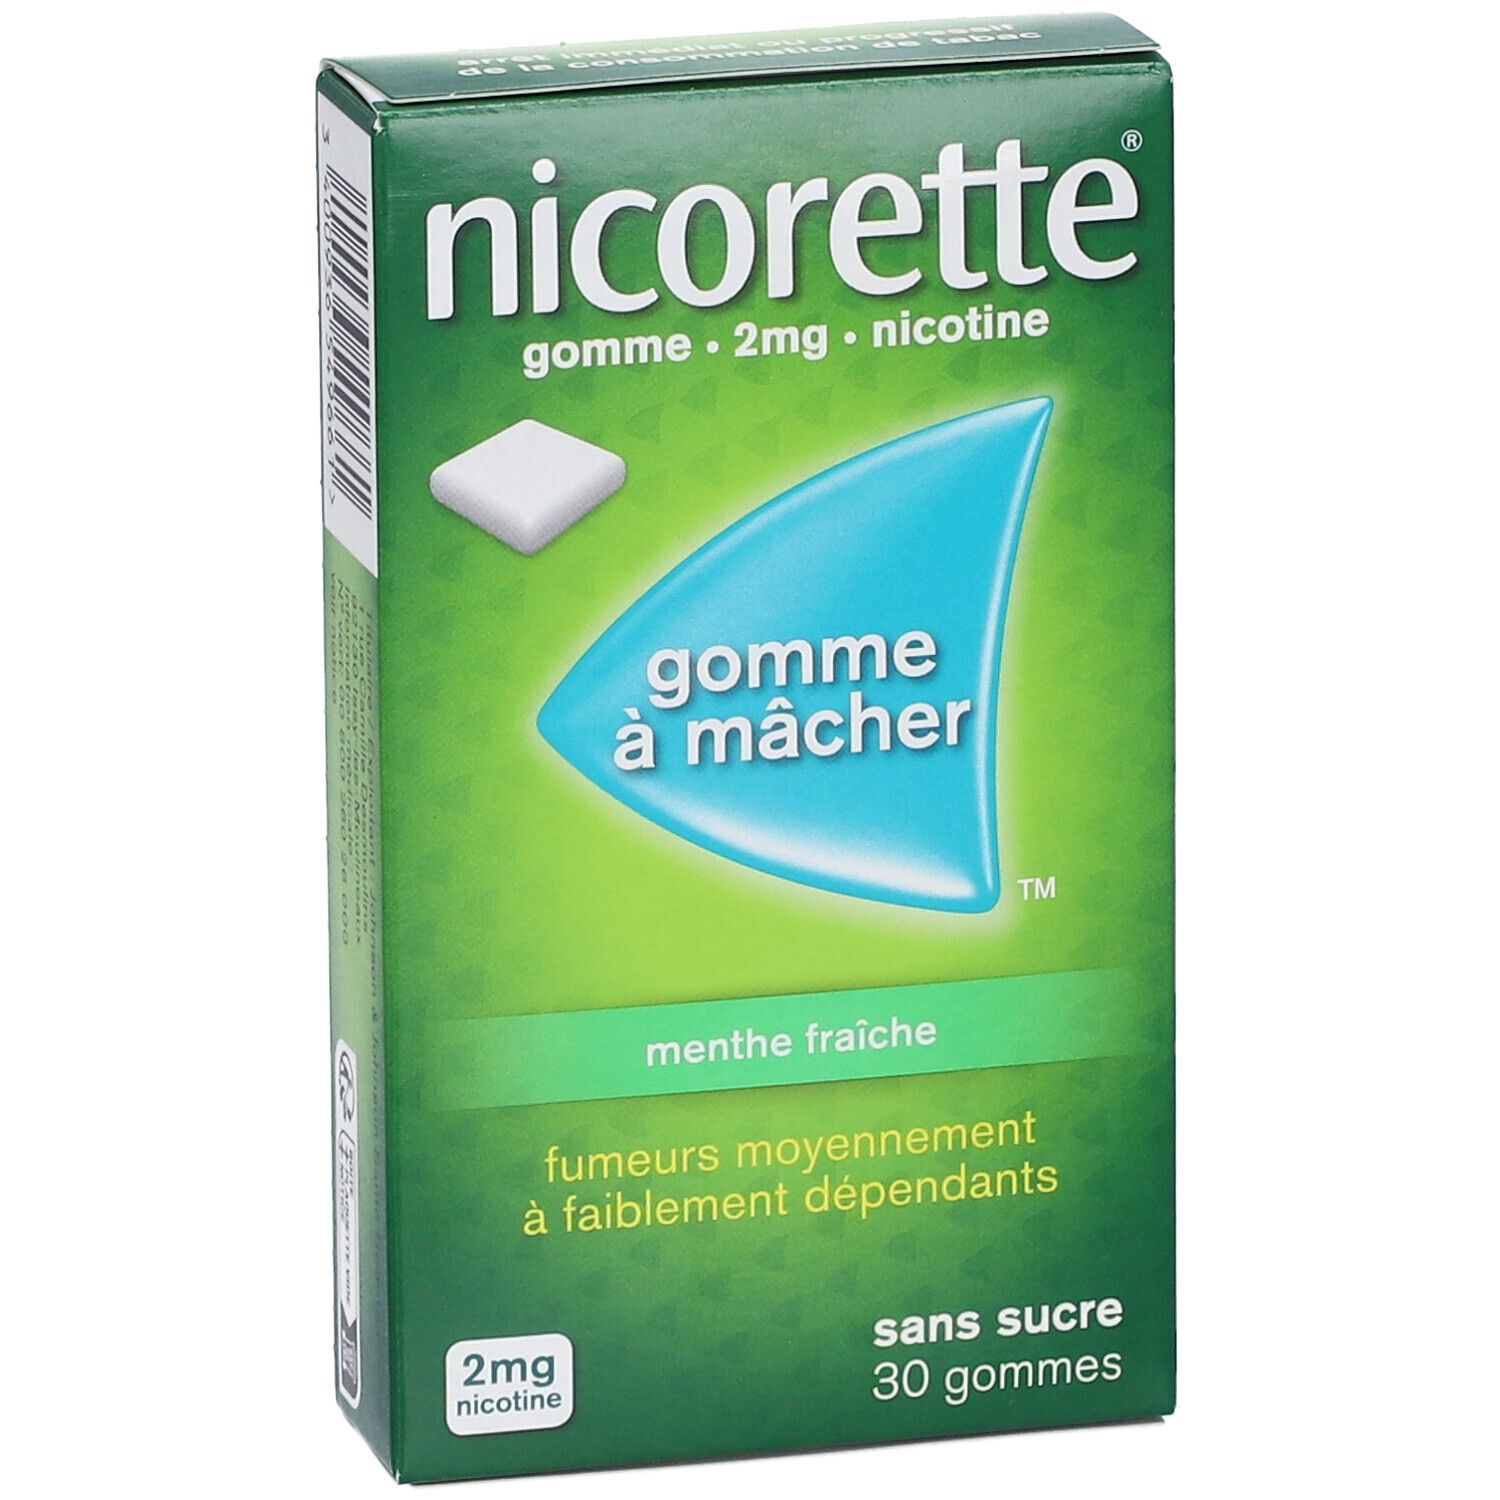 Nicorette® menthe fraiche s/s